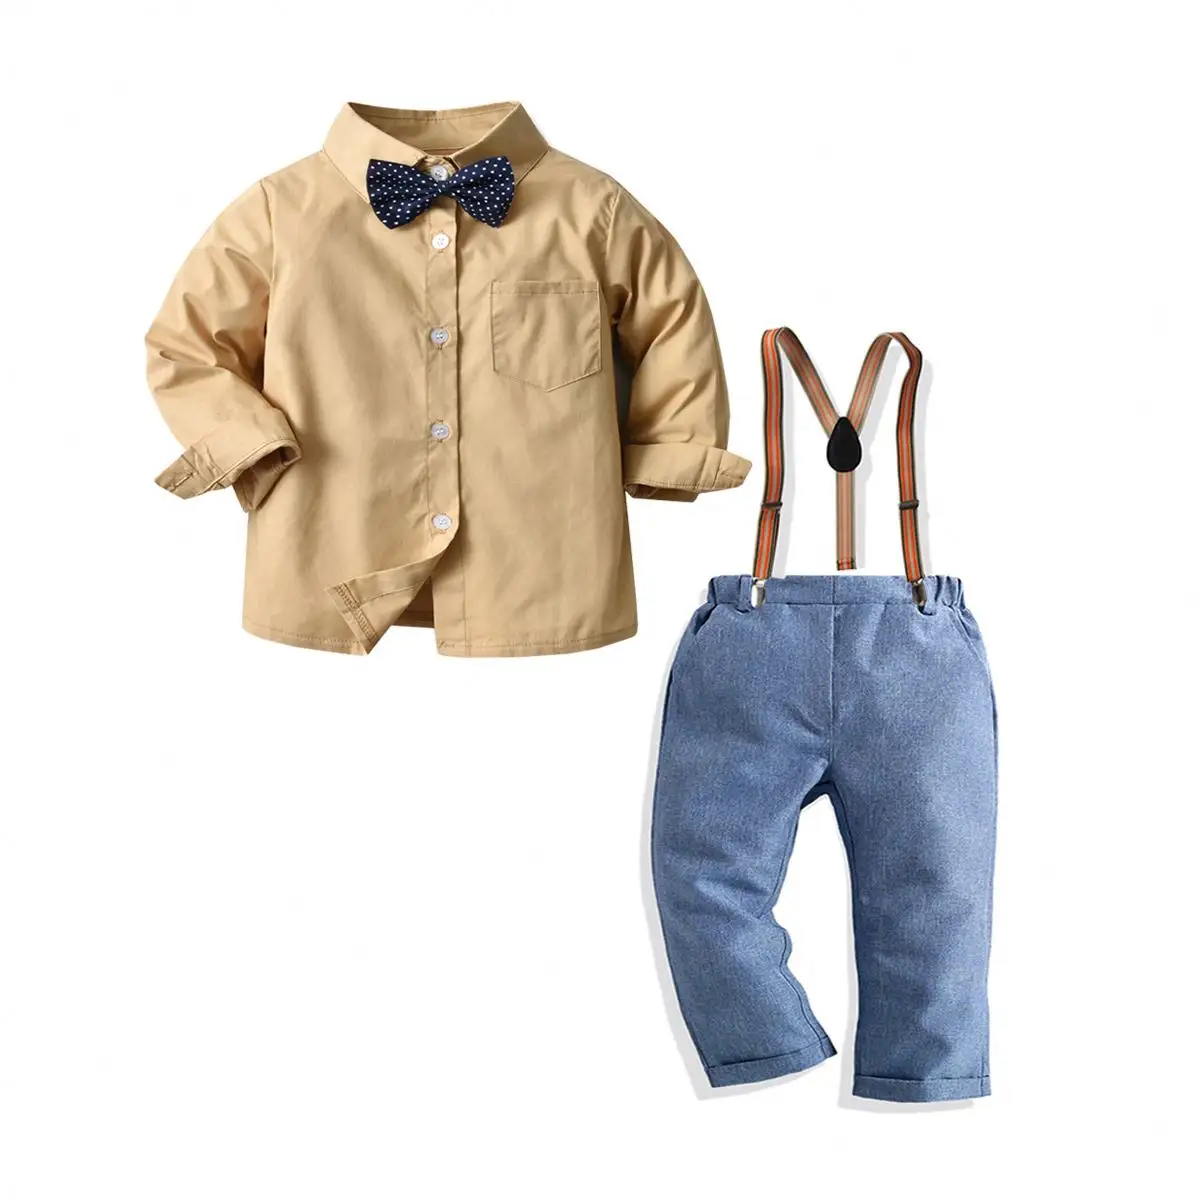 Shelmin लक्जरी ब्रांड लड़कों के कपड़े सेट शरद ऋतु शिशु सूट बच्चे लड़कों 'वस्त्र लड़कों के लिए दो-टुकड़ा सेट के लिए सेट शिशुओं